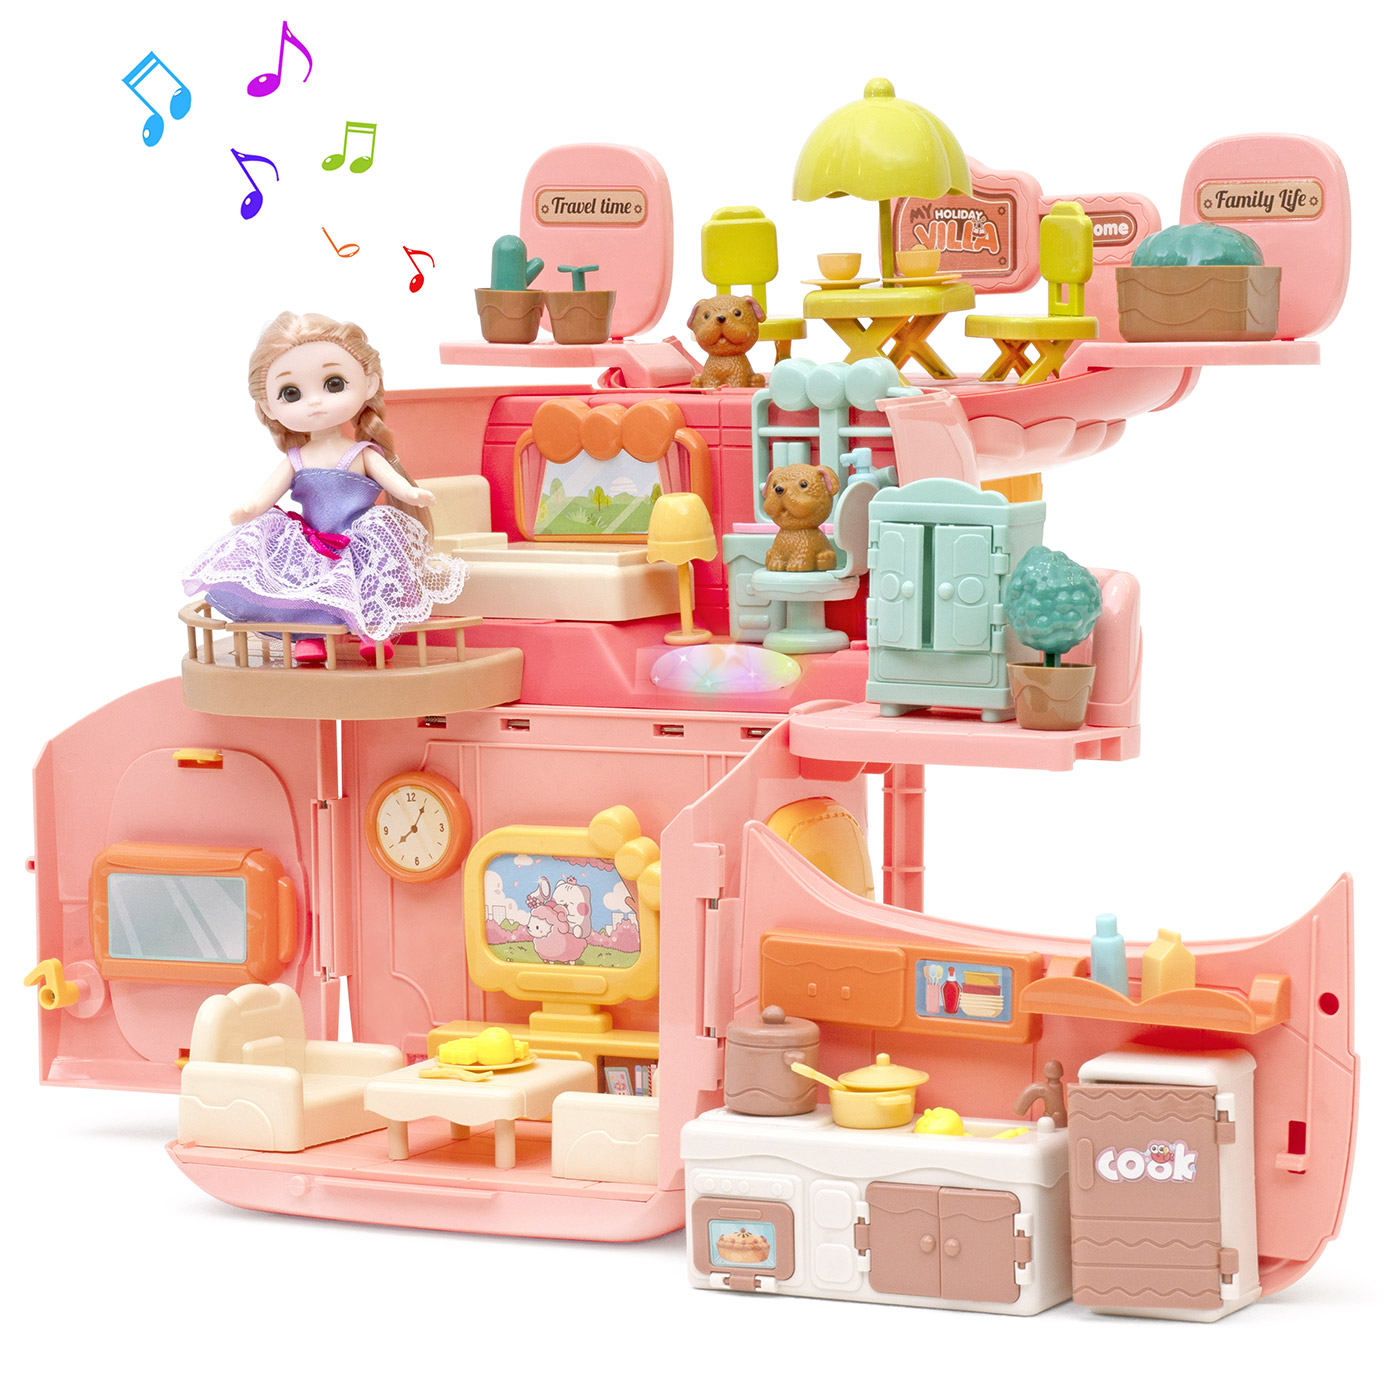 Игровой набор с куклами Funkids Домик Мечты кукольный домик с мебелью арт. CC6673 набор игровой barbie гардероб мечты раскладной hgx57